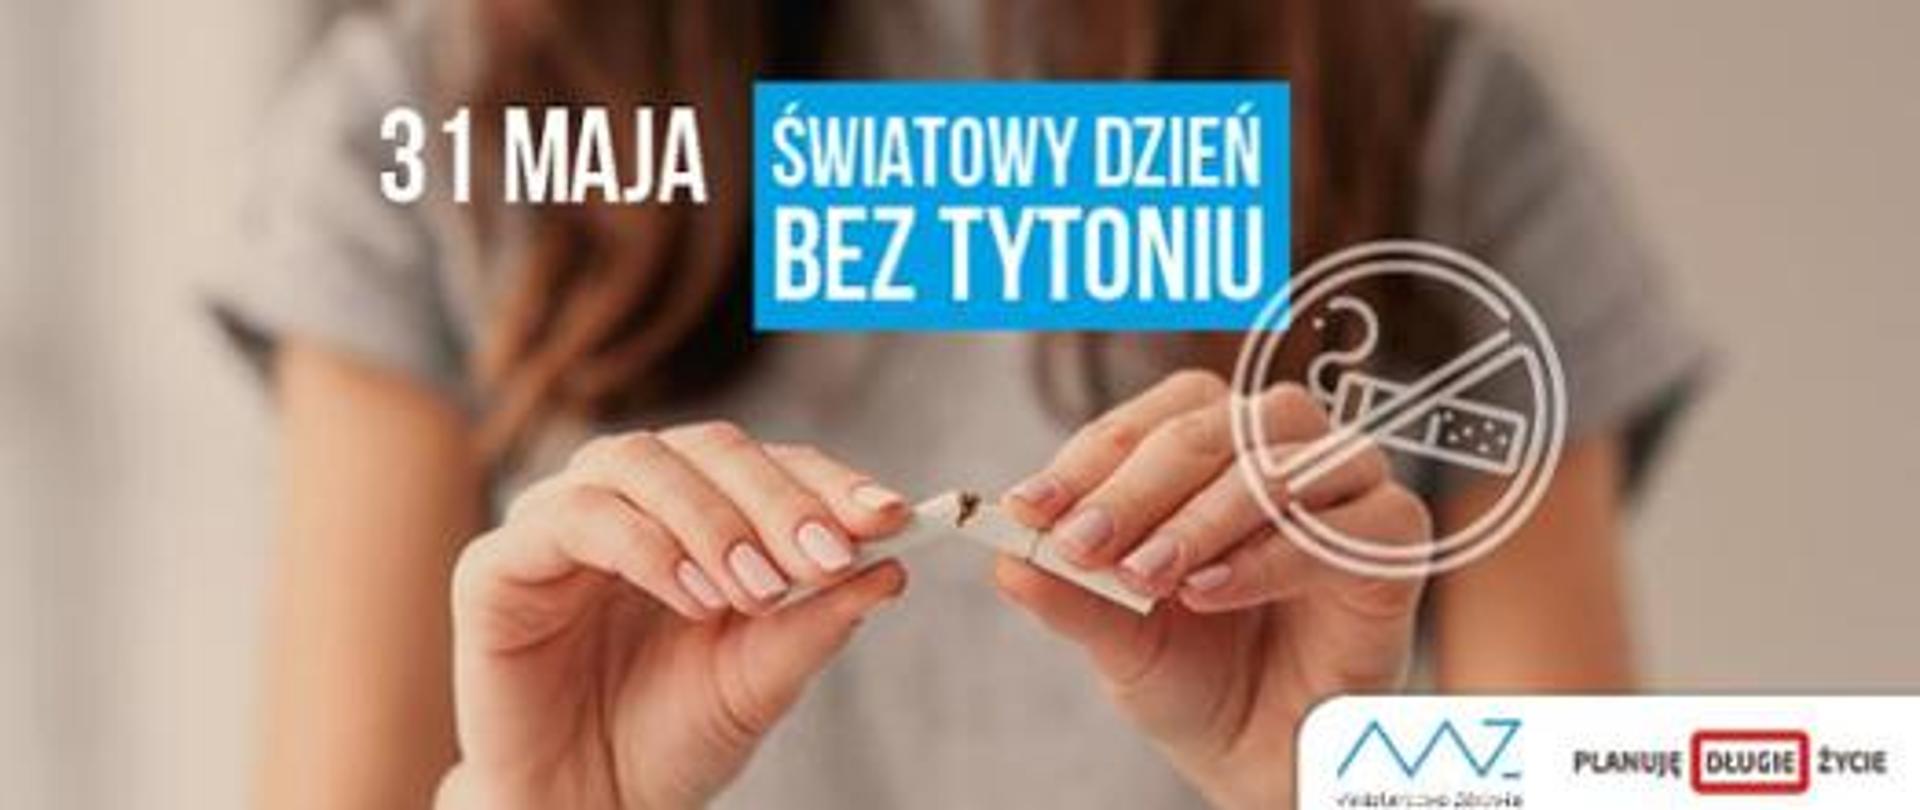 Światowy Dzień Bez Tytoniu 2021 - Zobowiązać się do rezygnacji